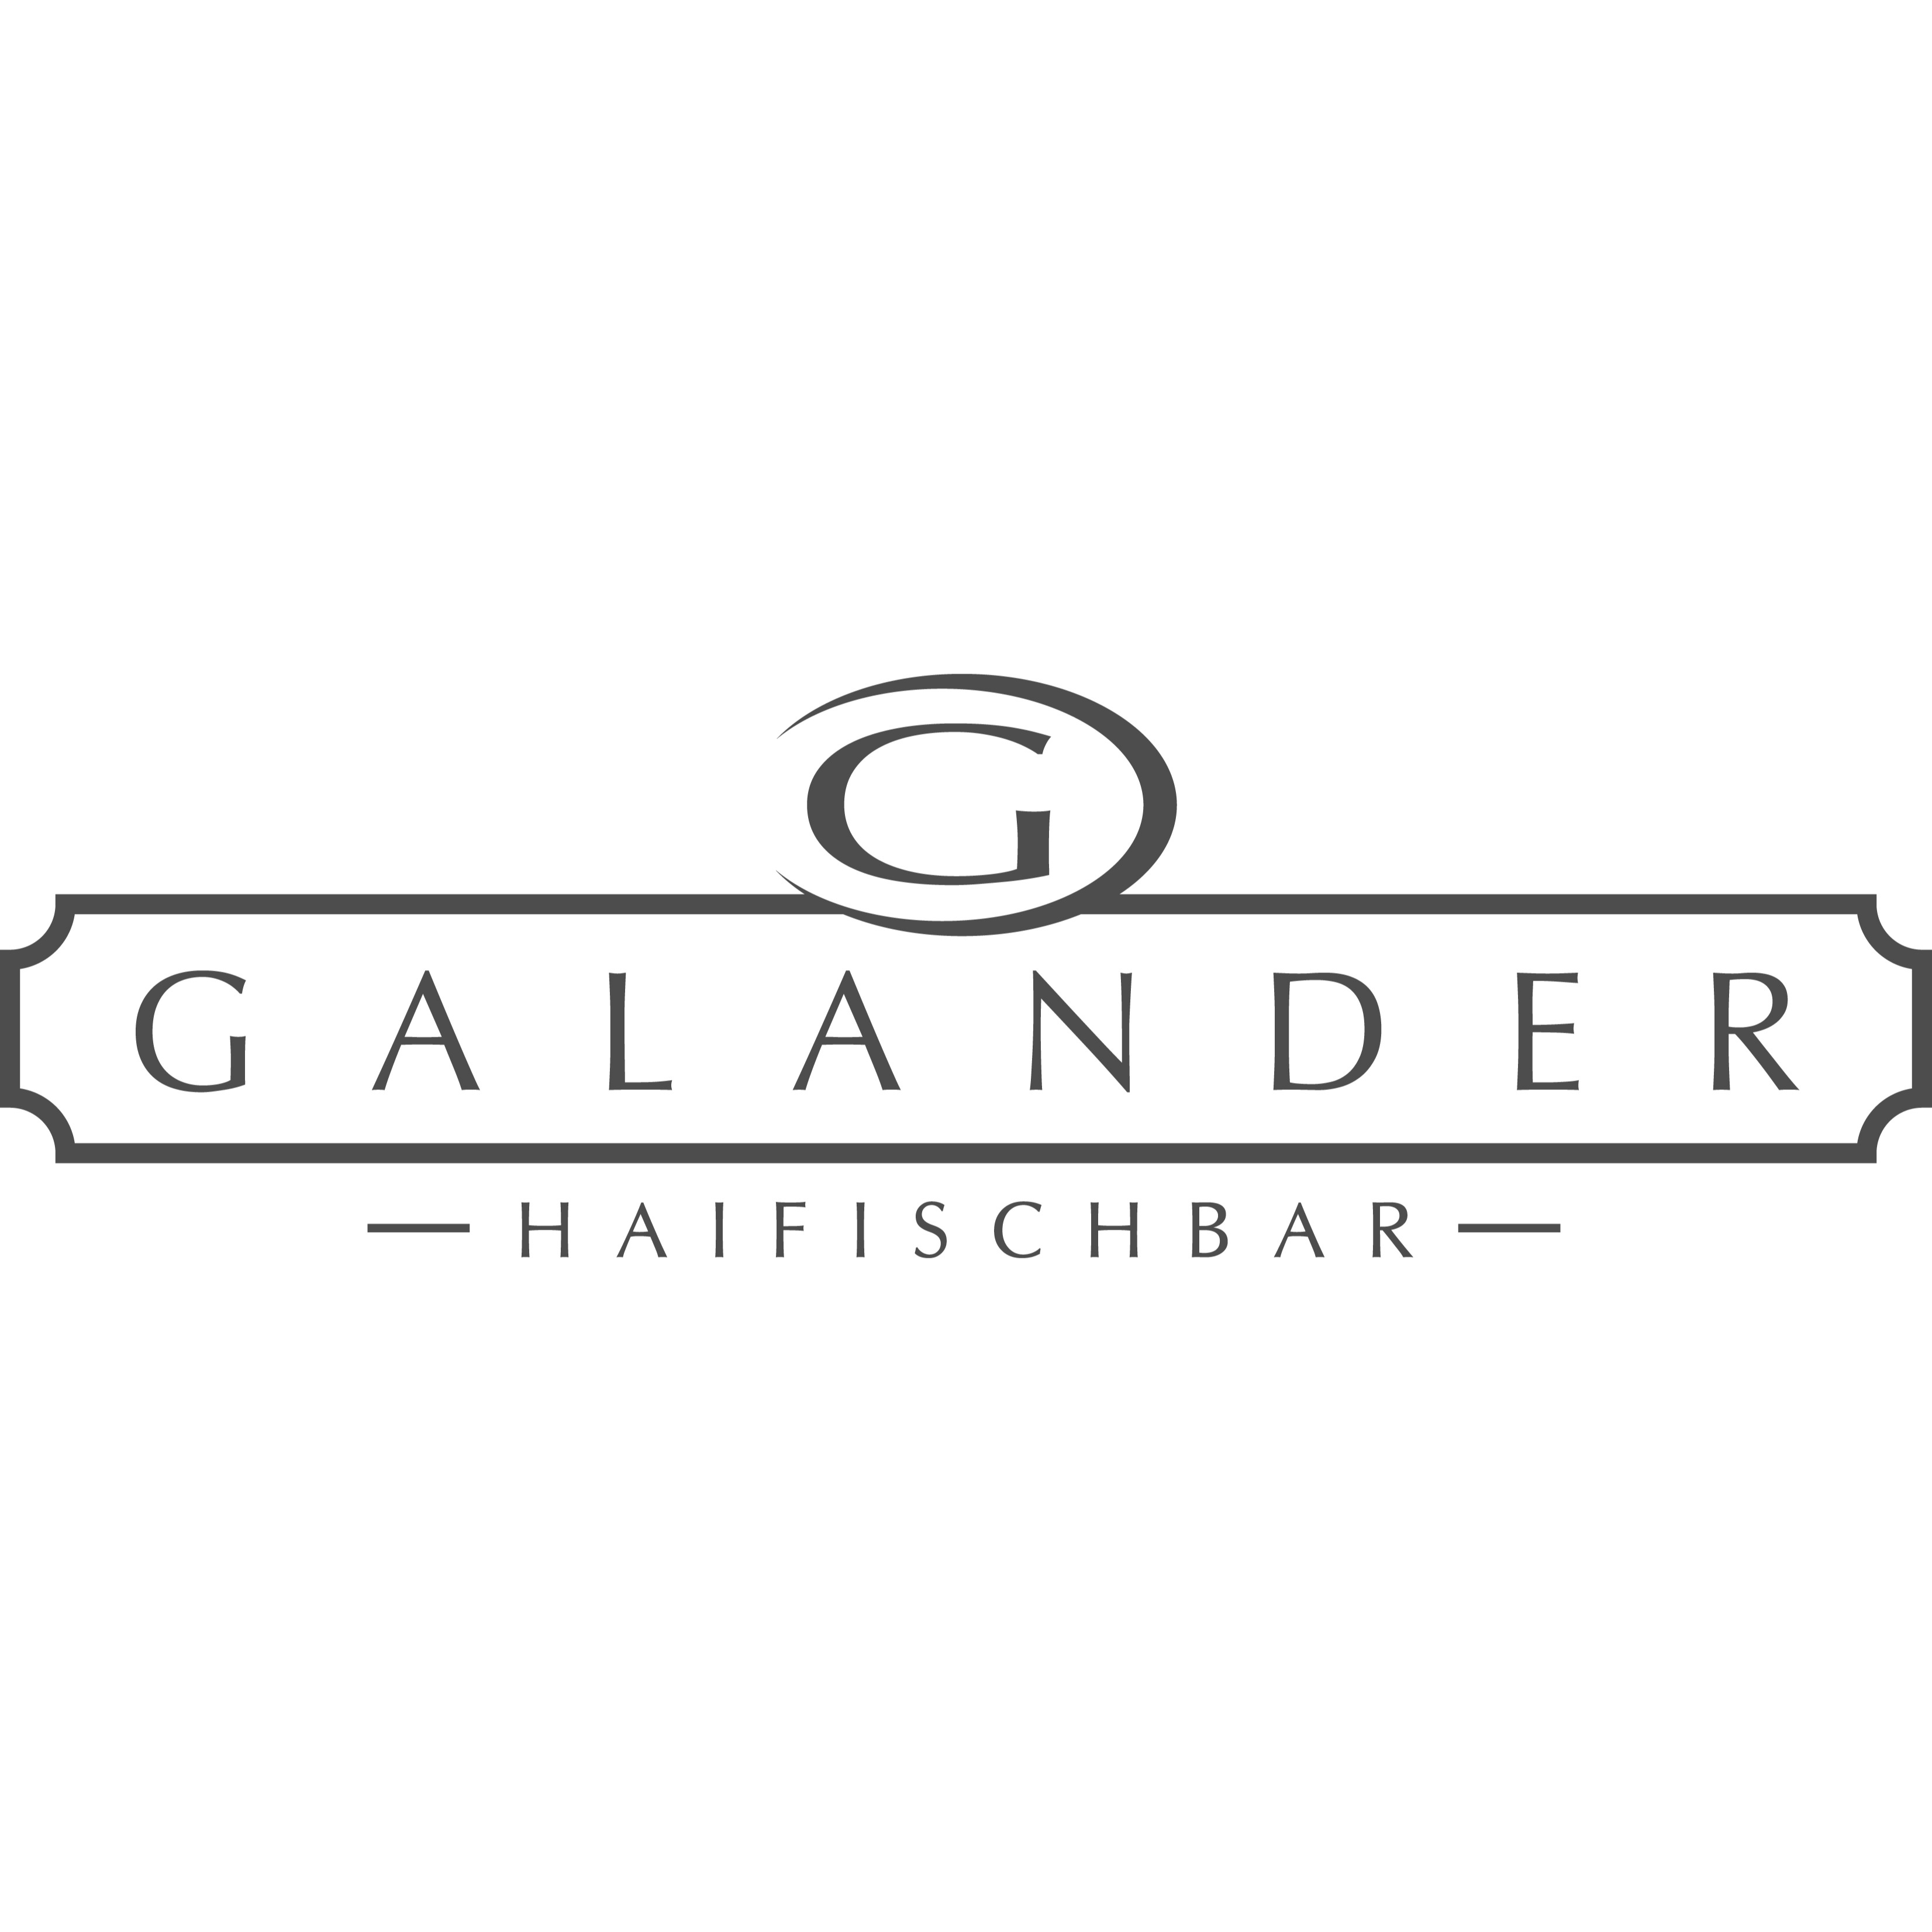 Galander Haifischbar